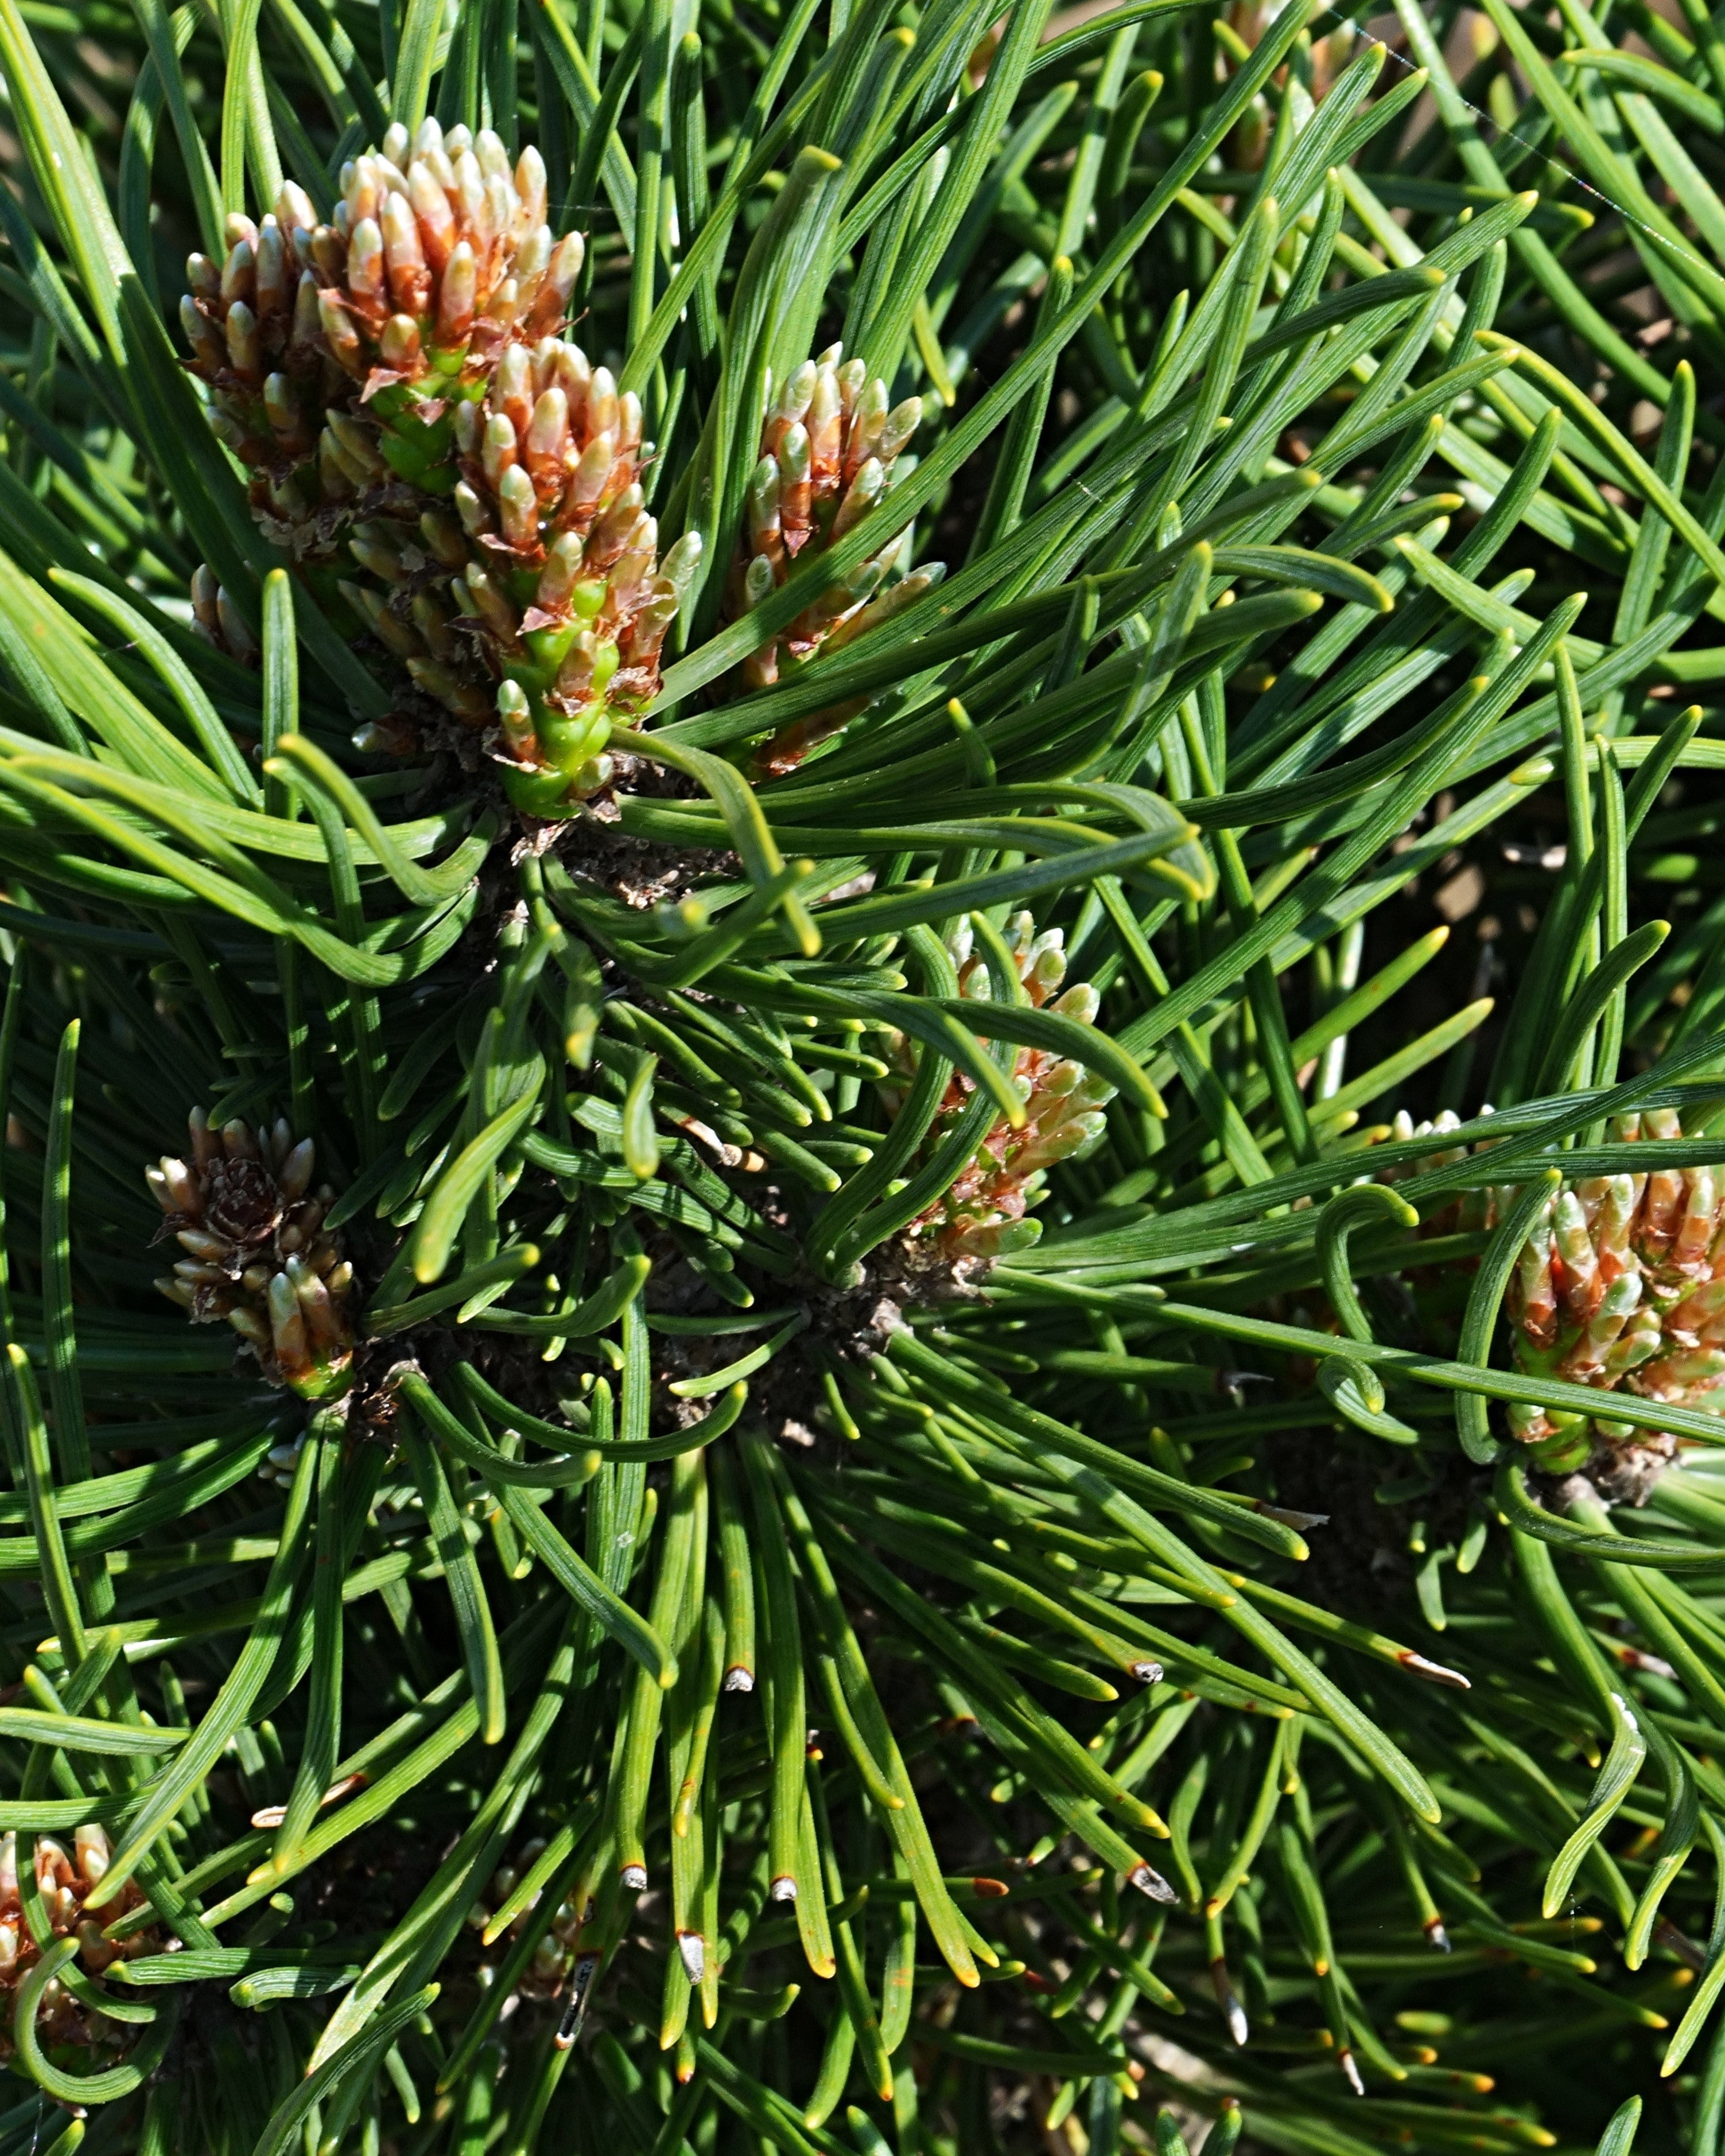 Dwarf Pine "Leonie"